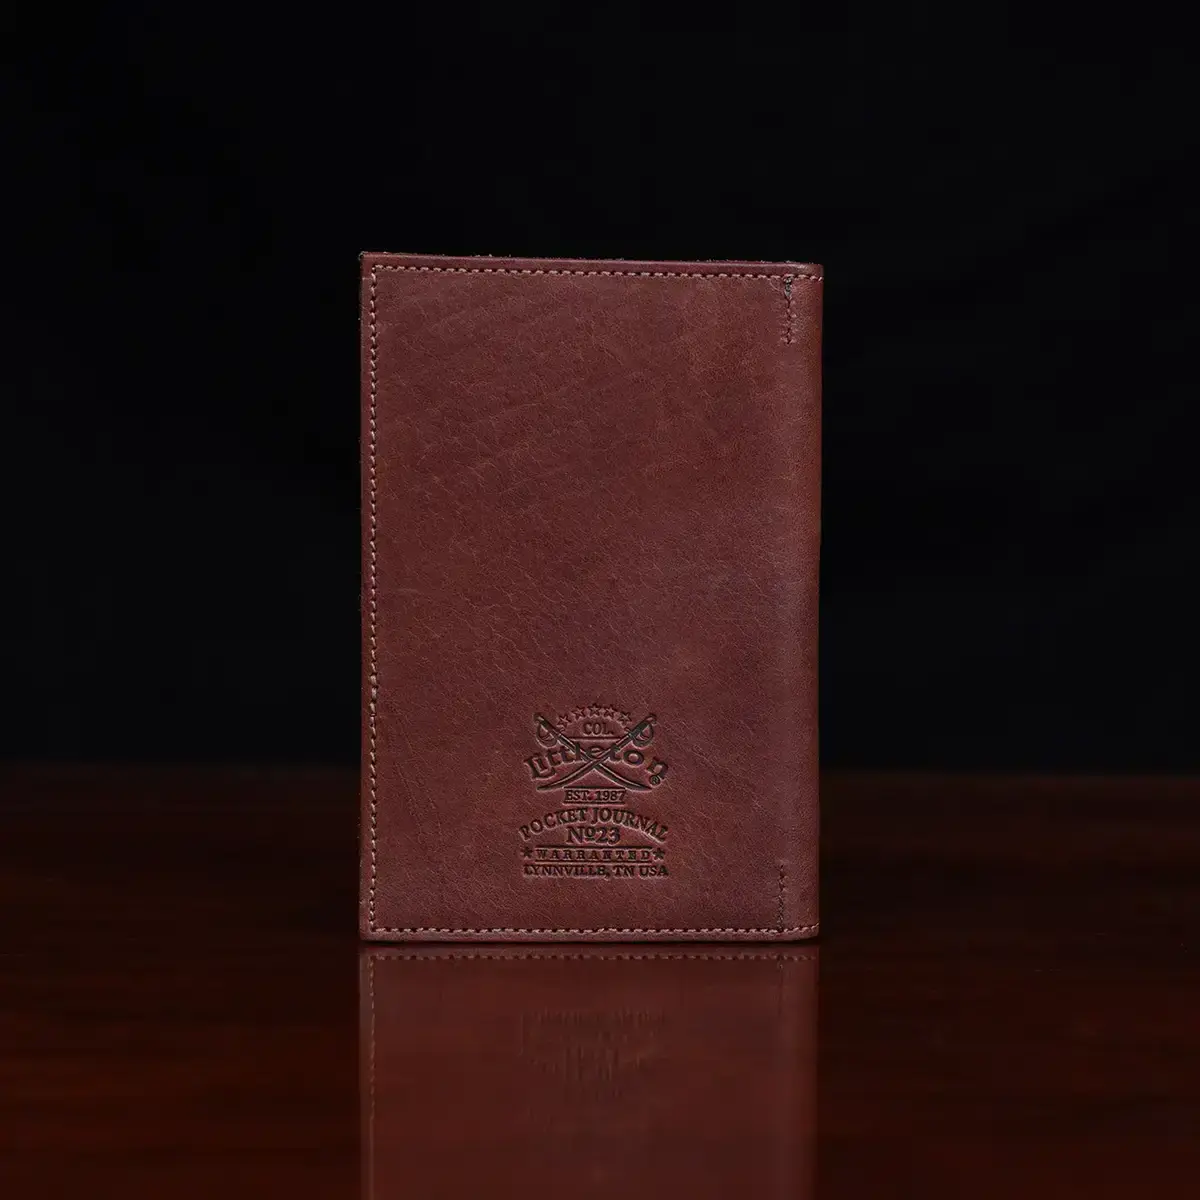 no 23 pocket journal showing the back side